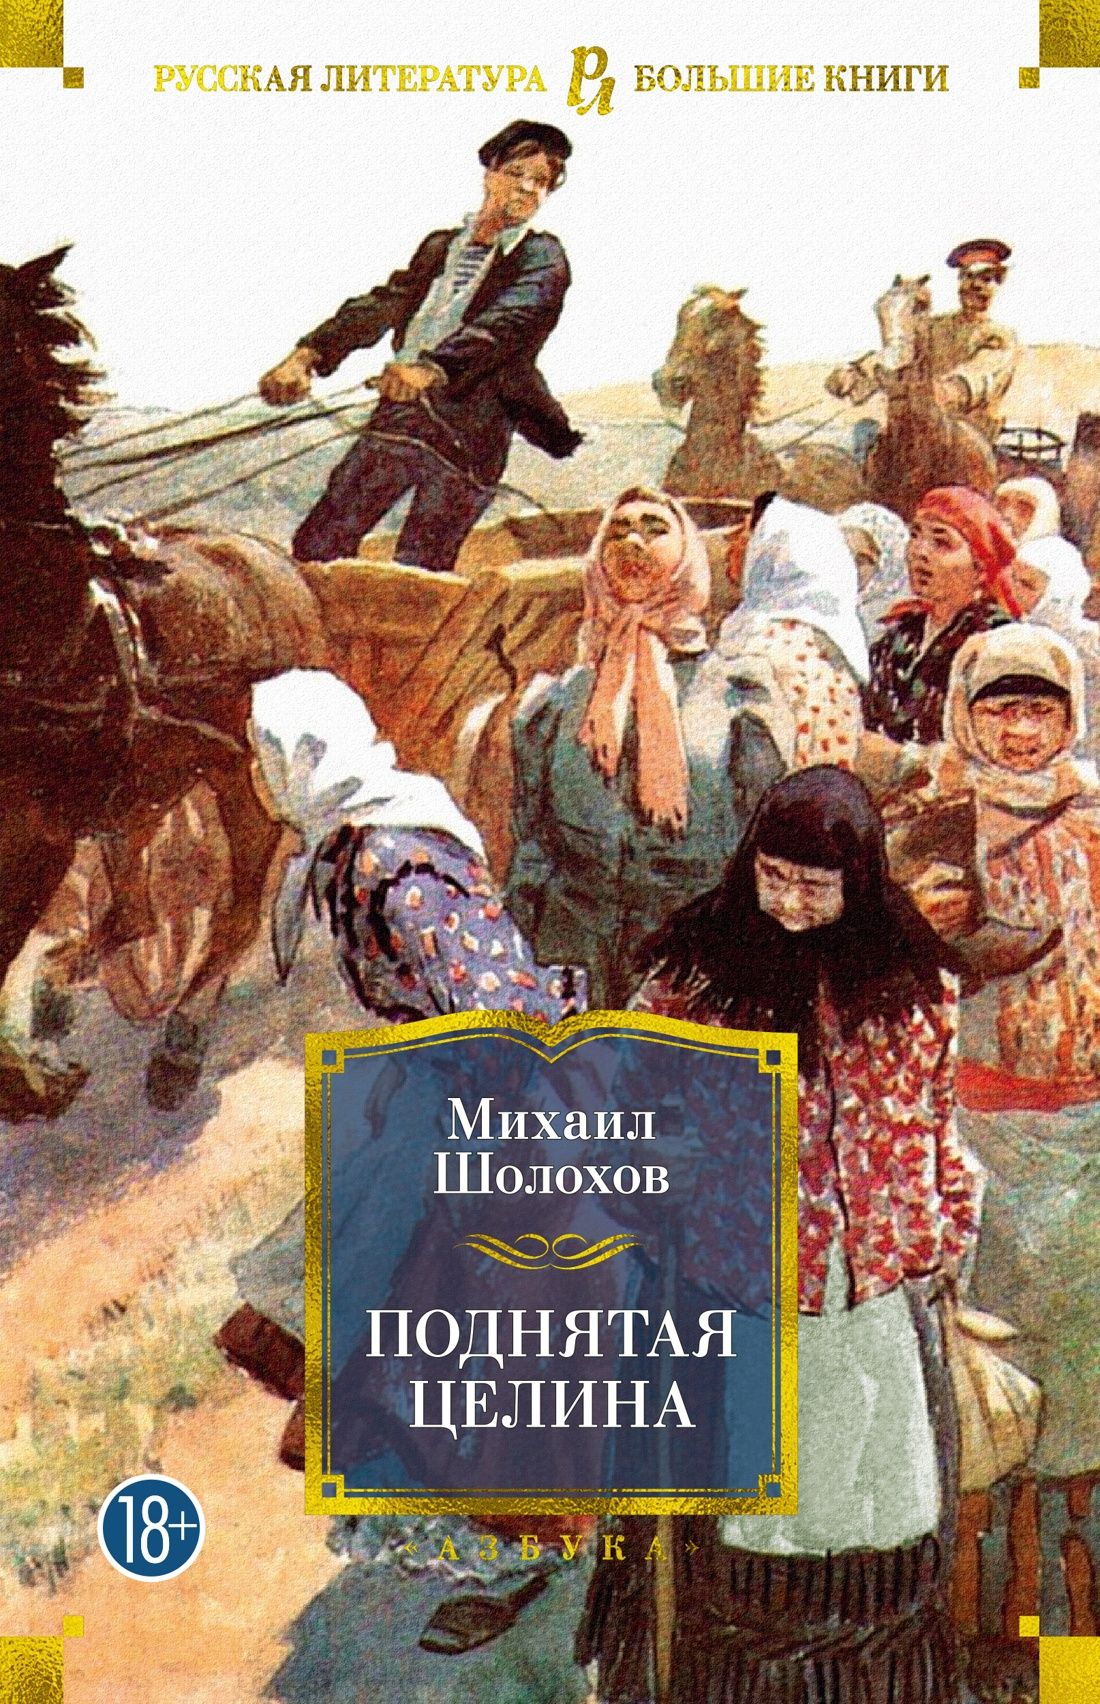 «Поднятая Целина» м. Шолохова (1932).